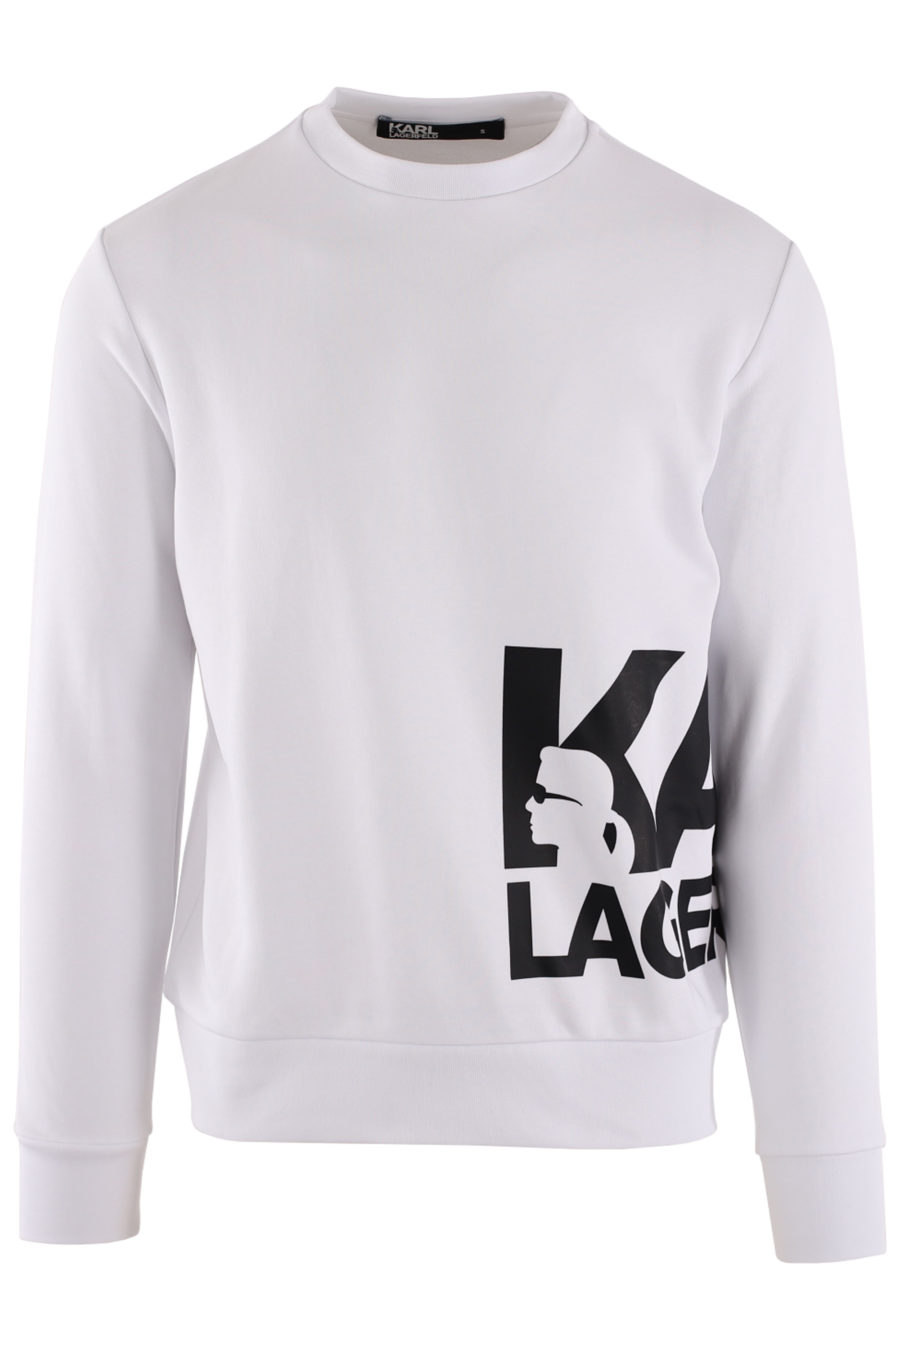 White sweatshirt with large black side logo - IMG 8714